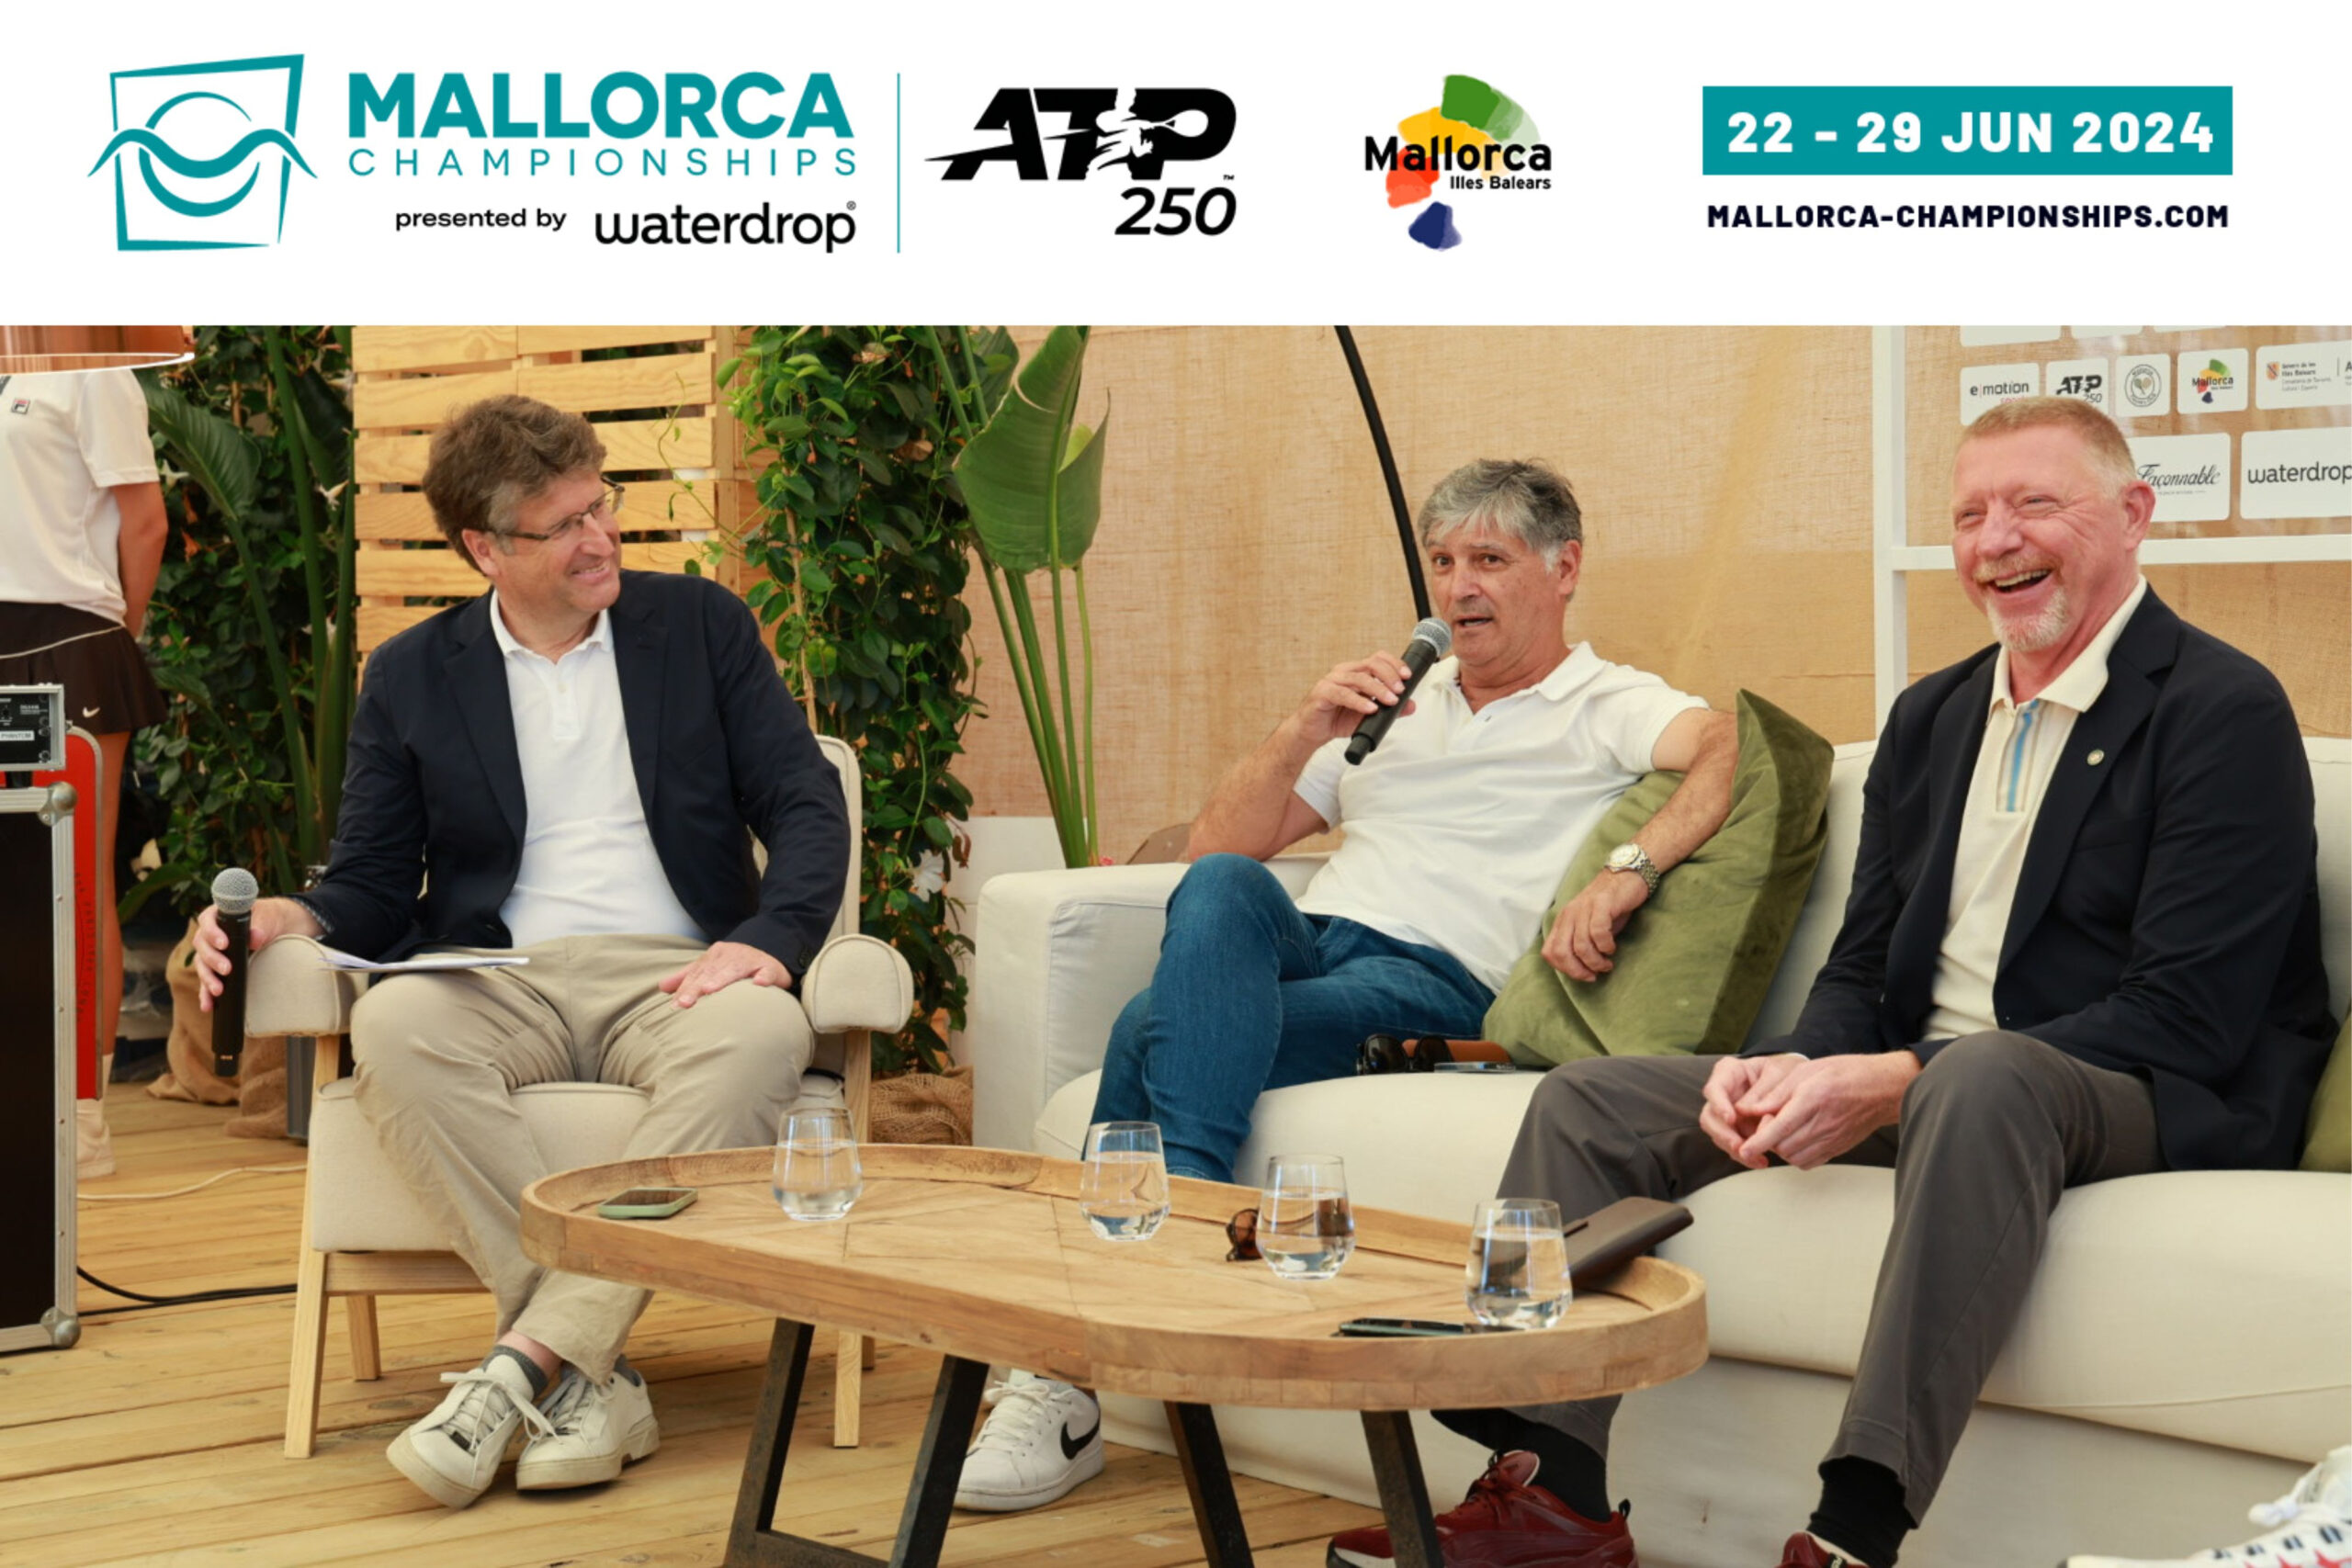 Toni Nadal, Boris Becker y Tommy Haas Deslumbran en el Mallorca Championships con Sus Perspectivas sobre el Tenis